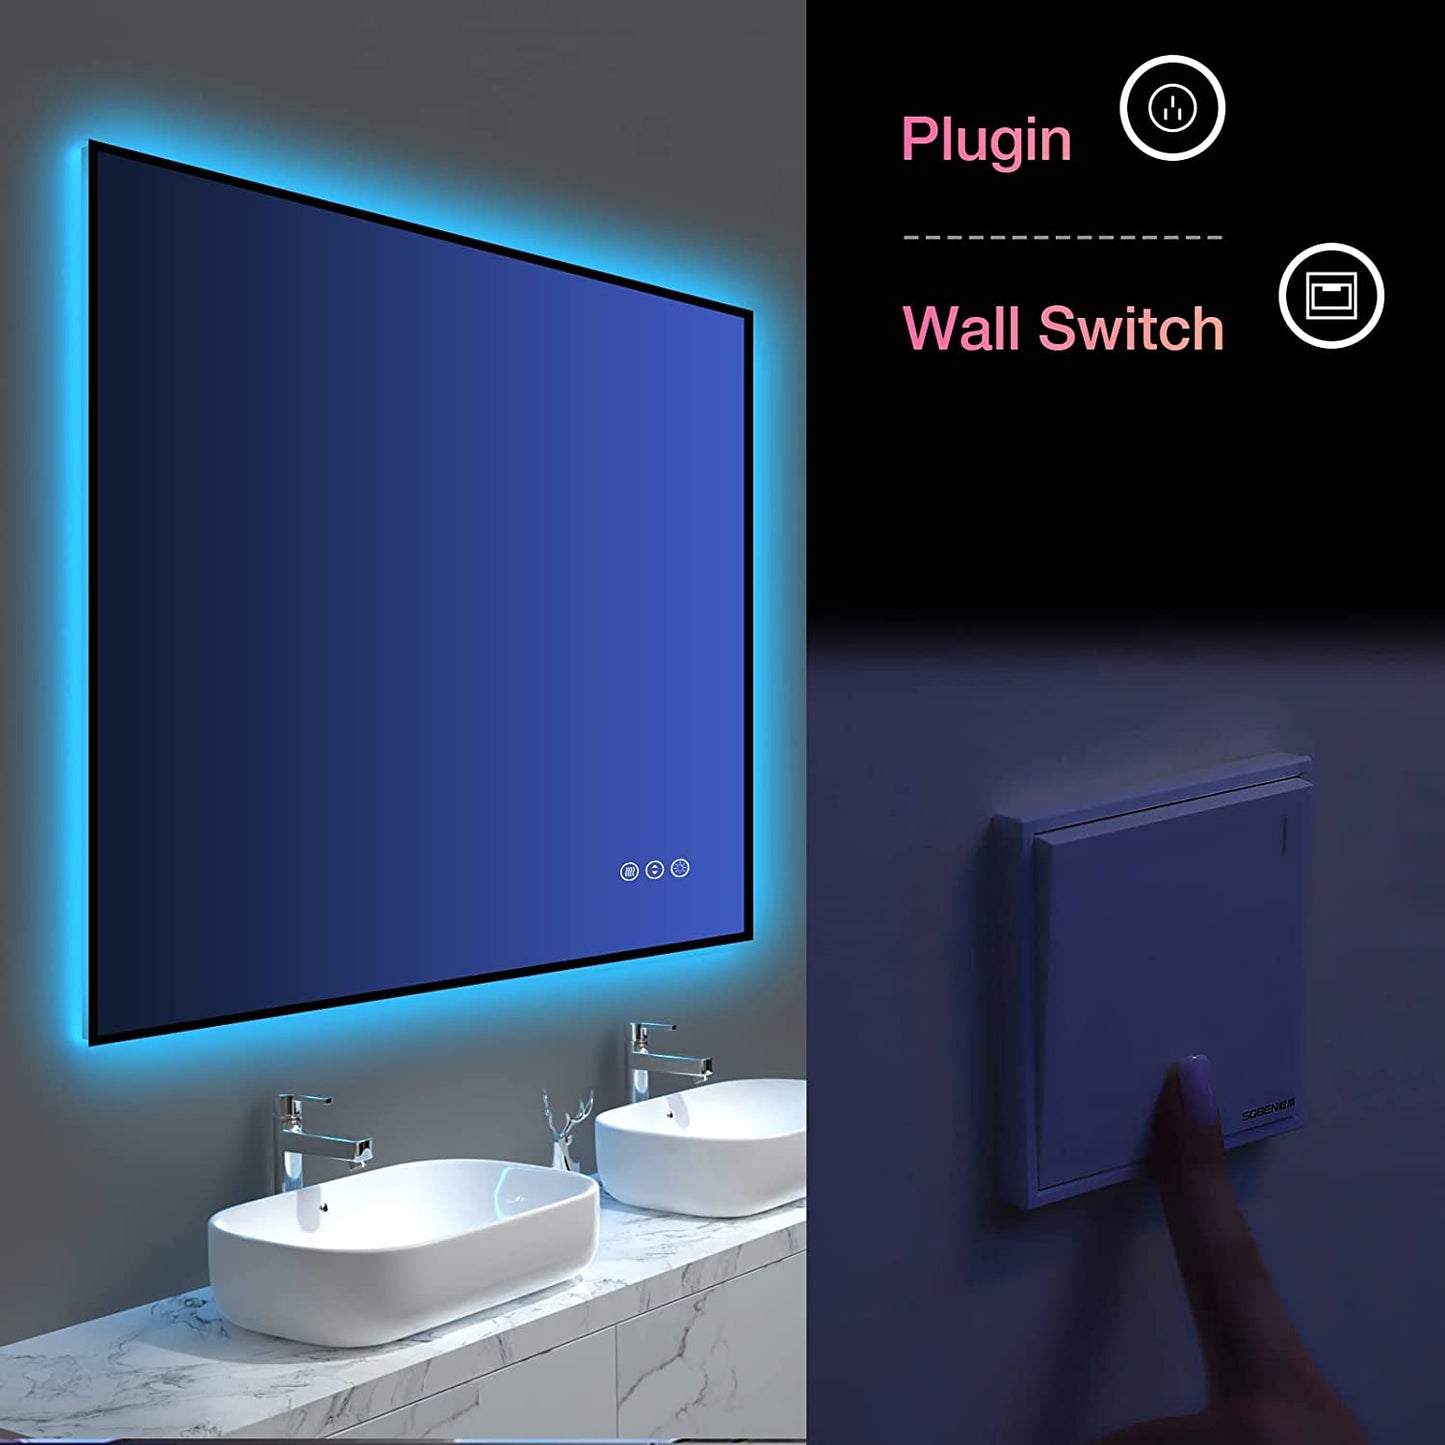 48"x32" Bathroom Mirror with RGB Backlit